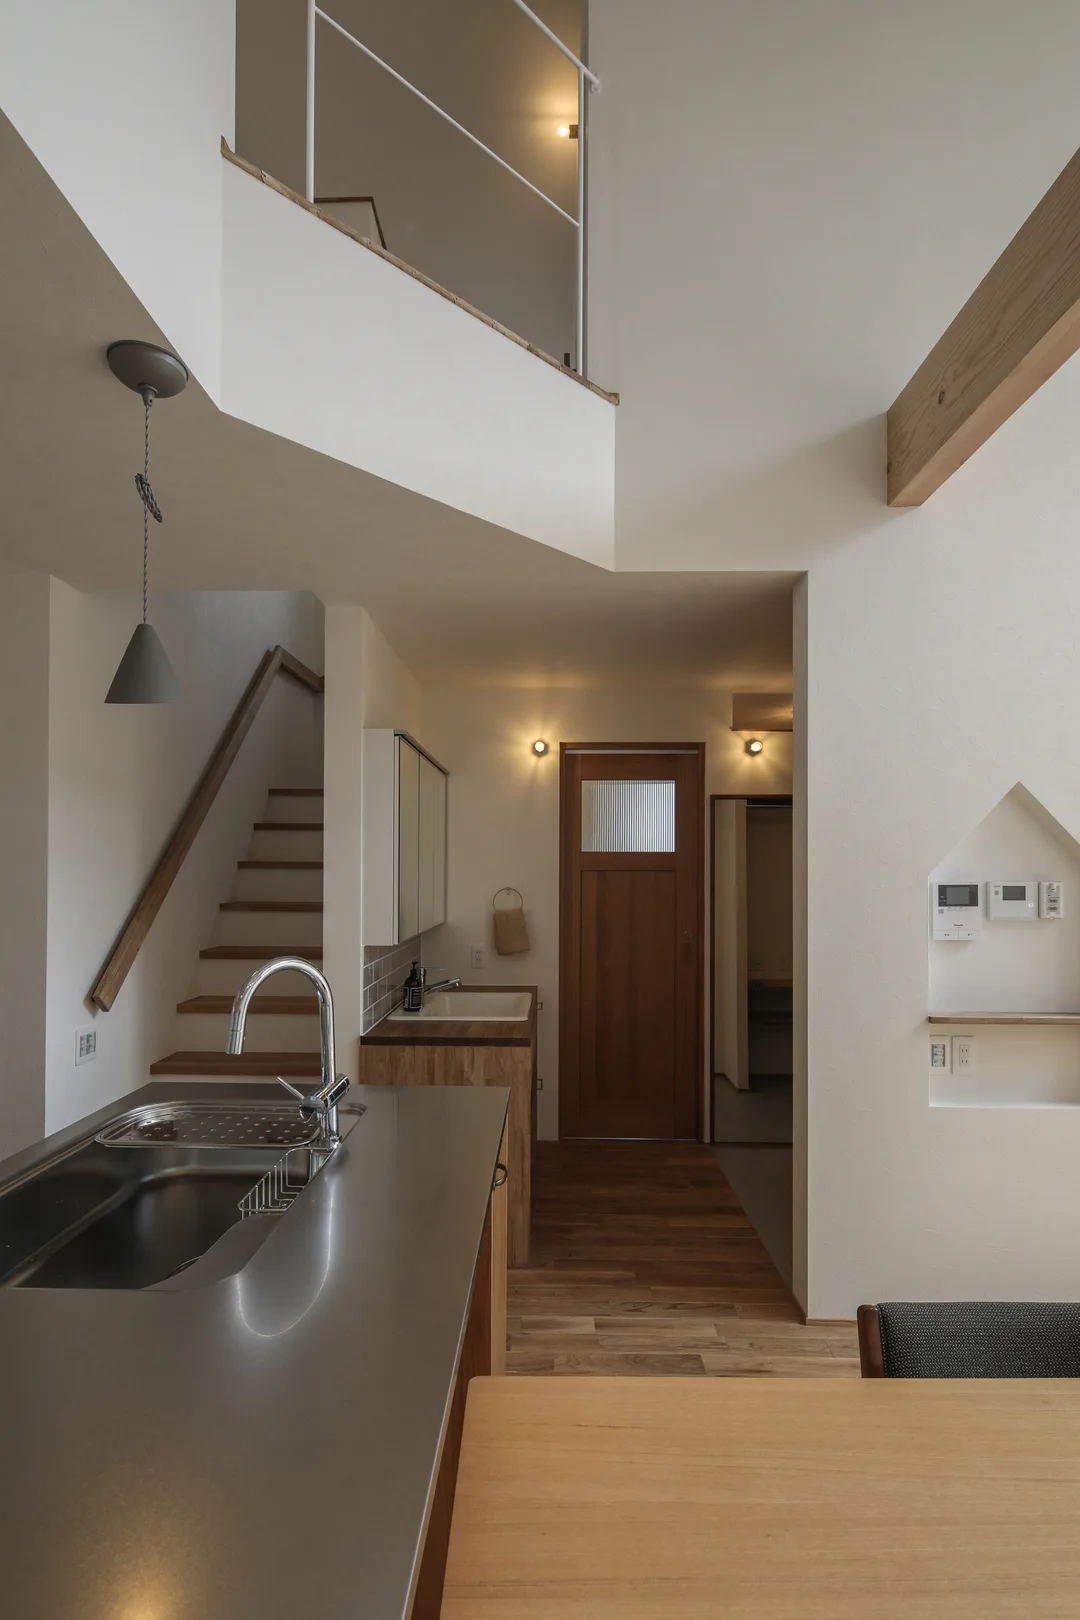 左手前にキッチン、右手前にダイニングテーブル、正面奥に木製のドア。上部は吹き抜けていて、2階廊下の白い手すりが見える。